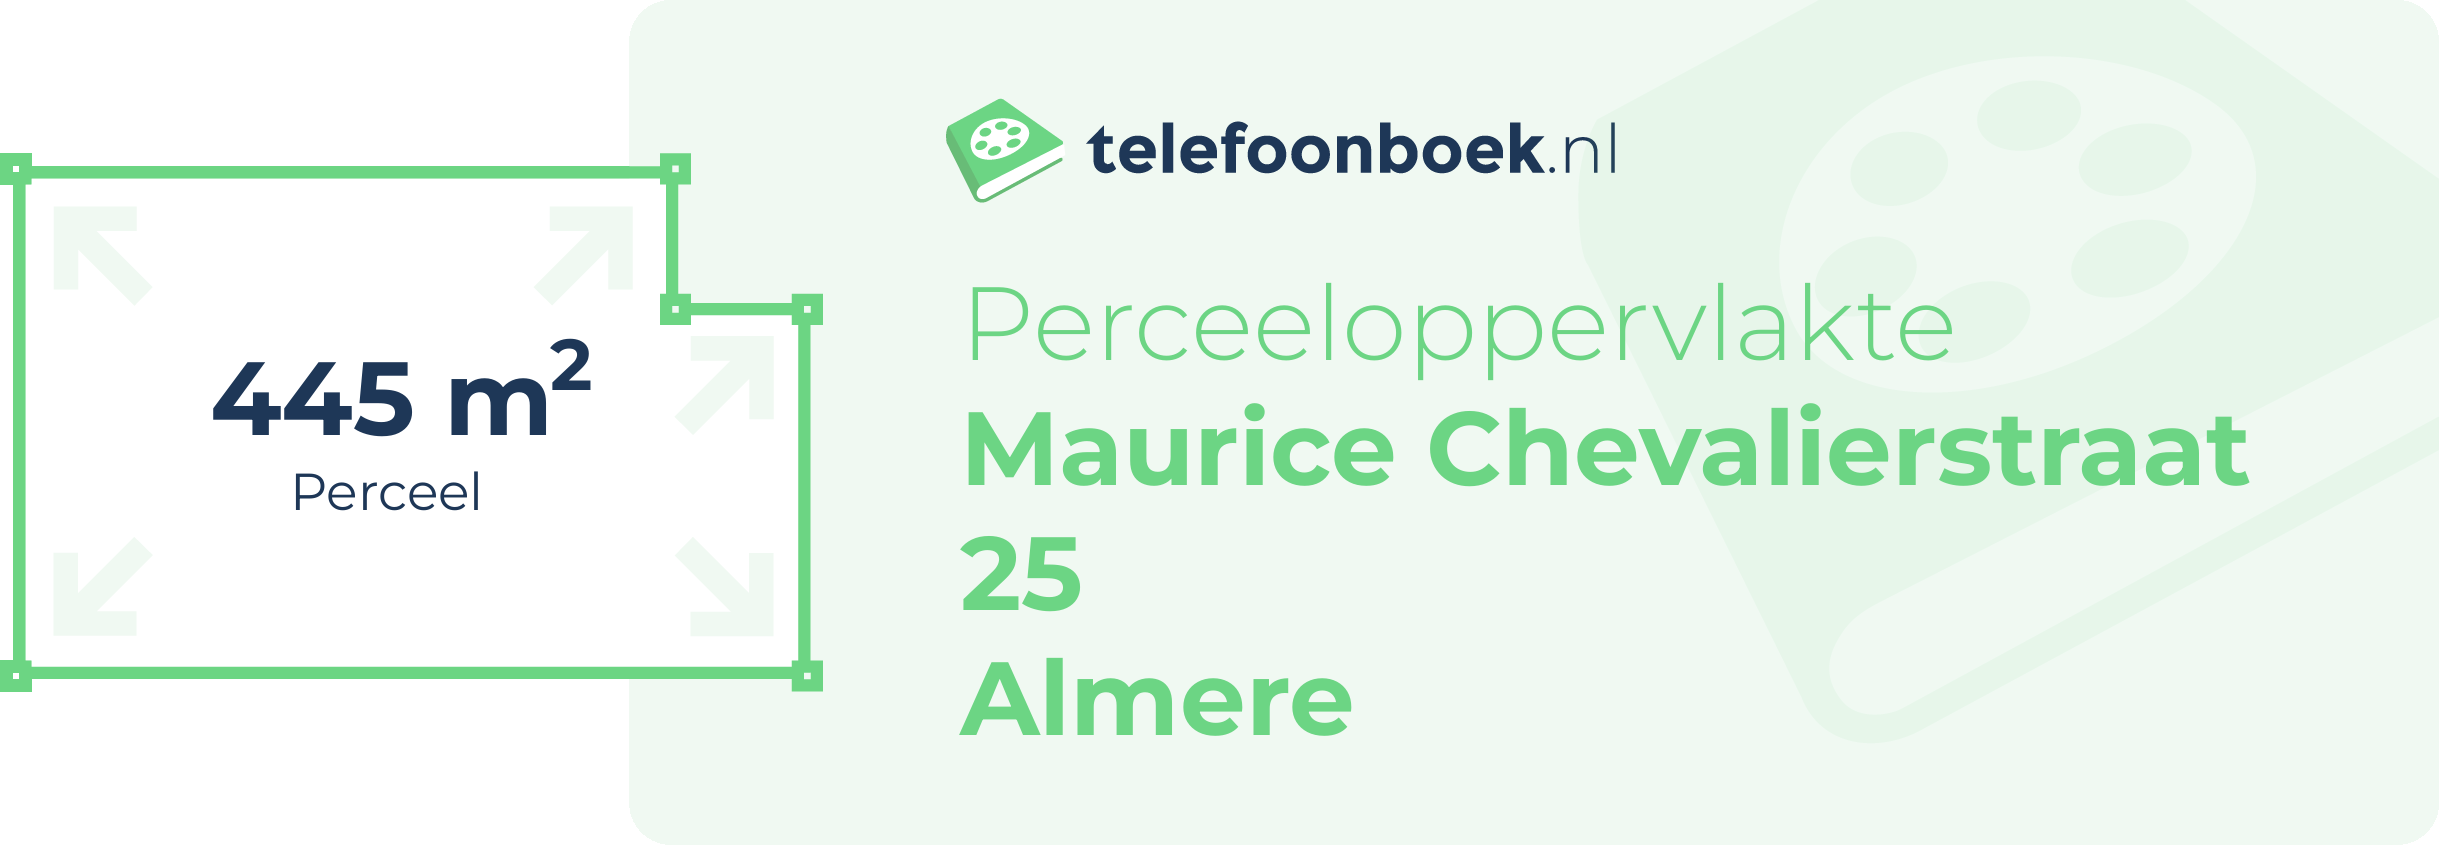 Perceeloppervlakte Maurice Chevalierstraat 25 Almere